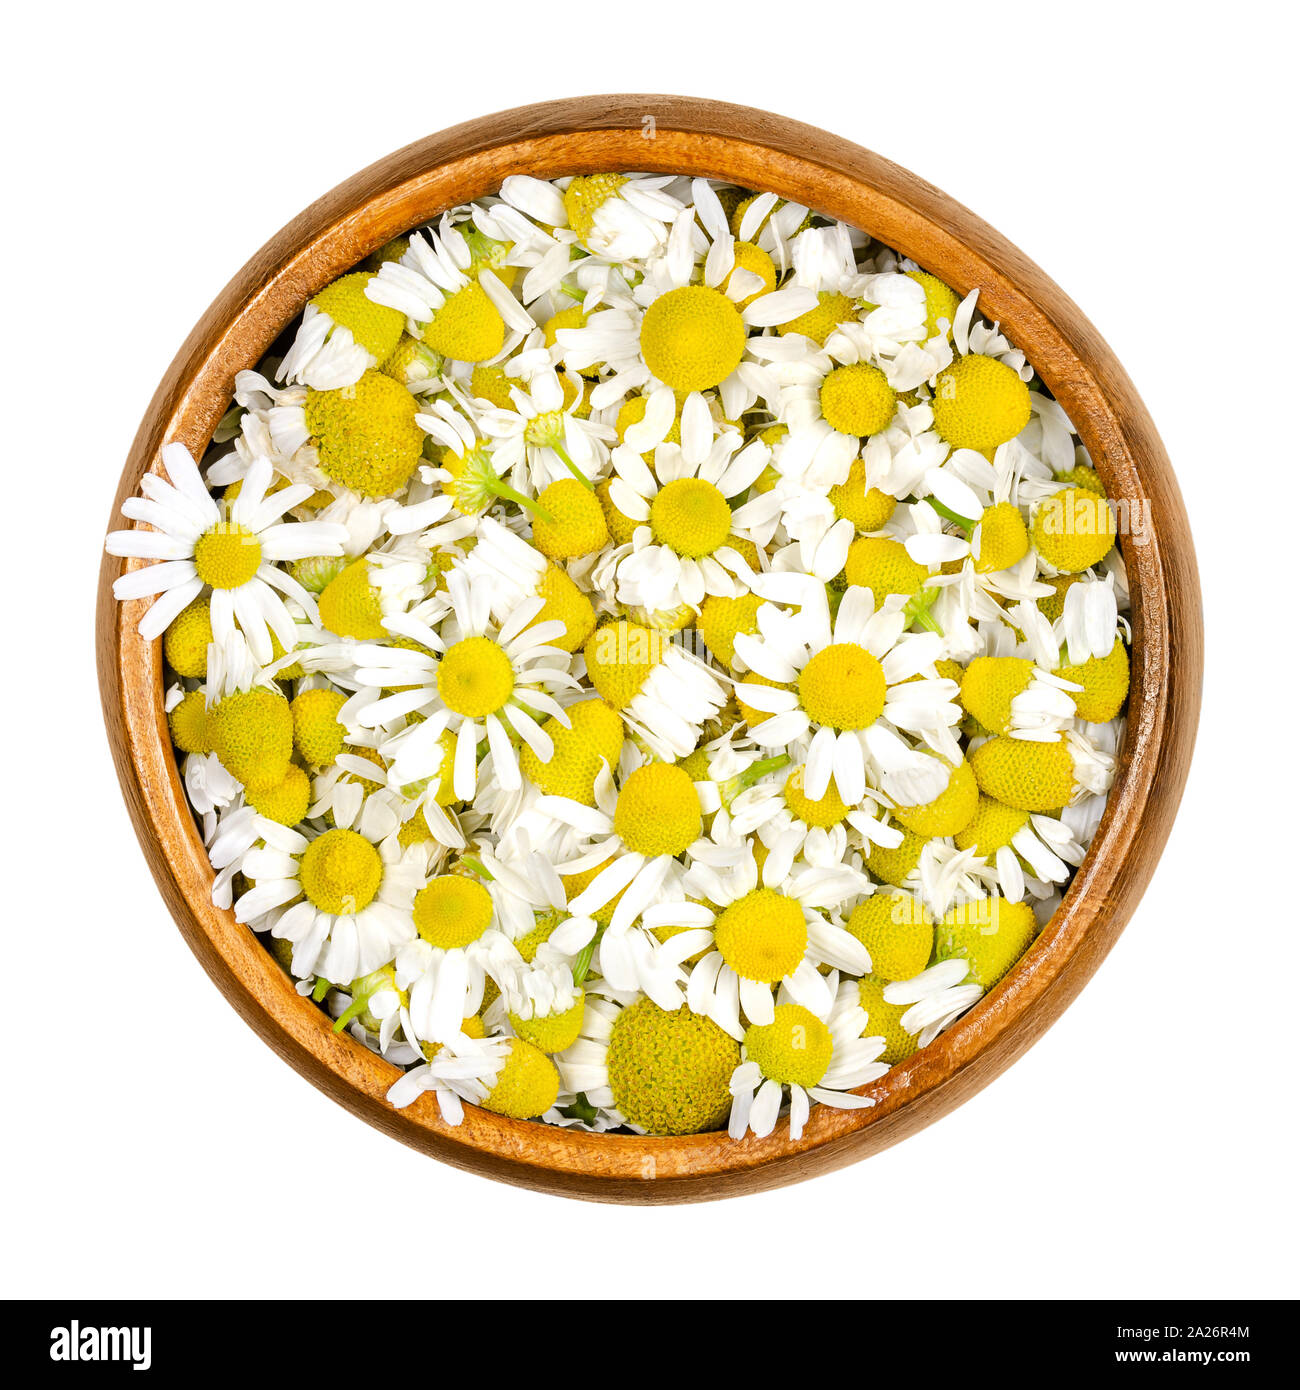 La Camomilla fiori in vaso di legno. Freschi di fiori di camomilla, Matricaria chamomilla, utilizzato per infusioni di erbe e nella medicina tradizionale. Foto Stock